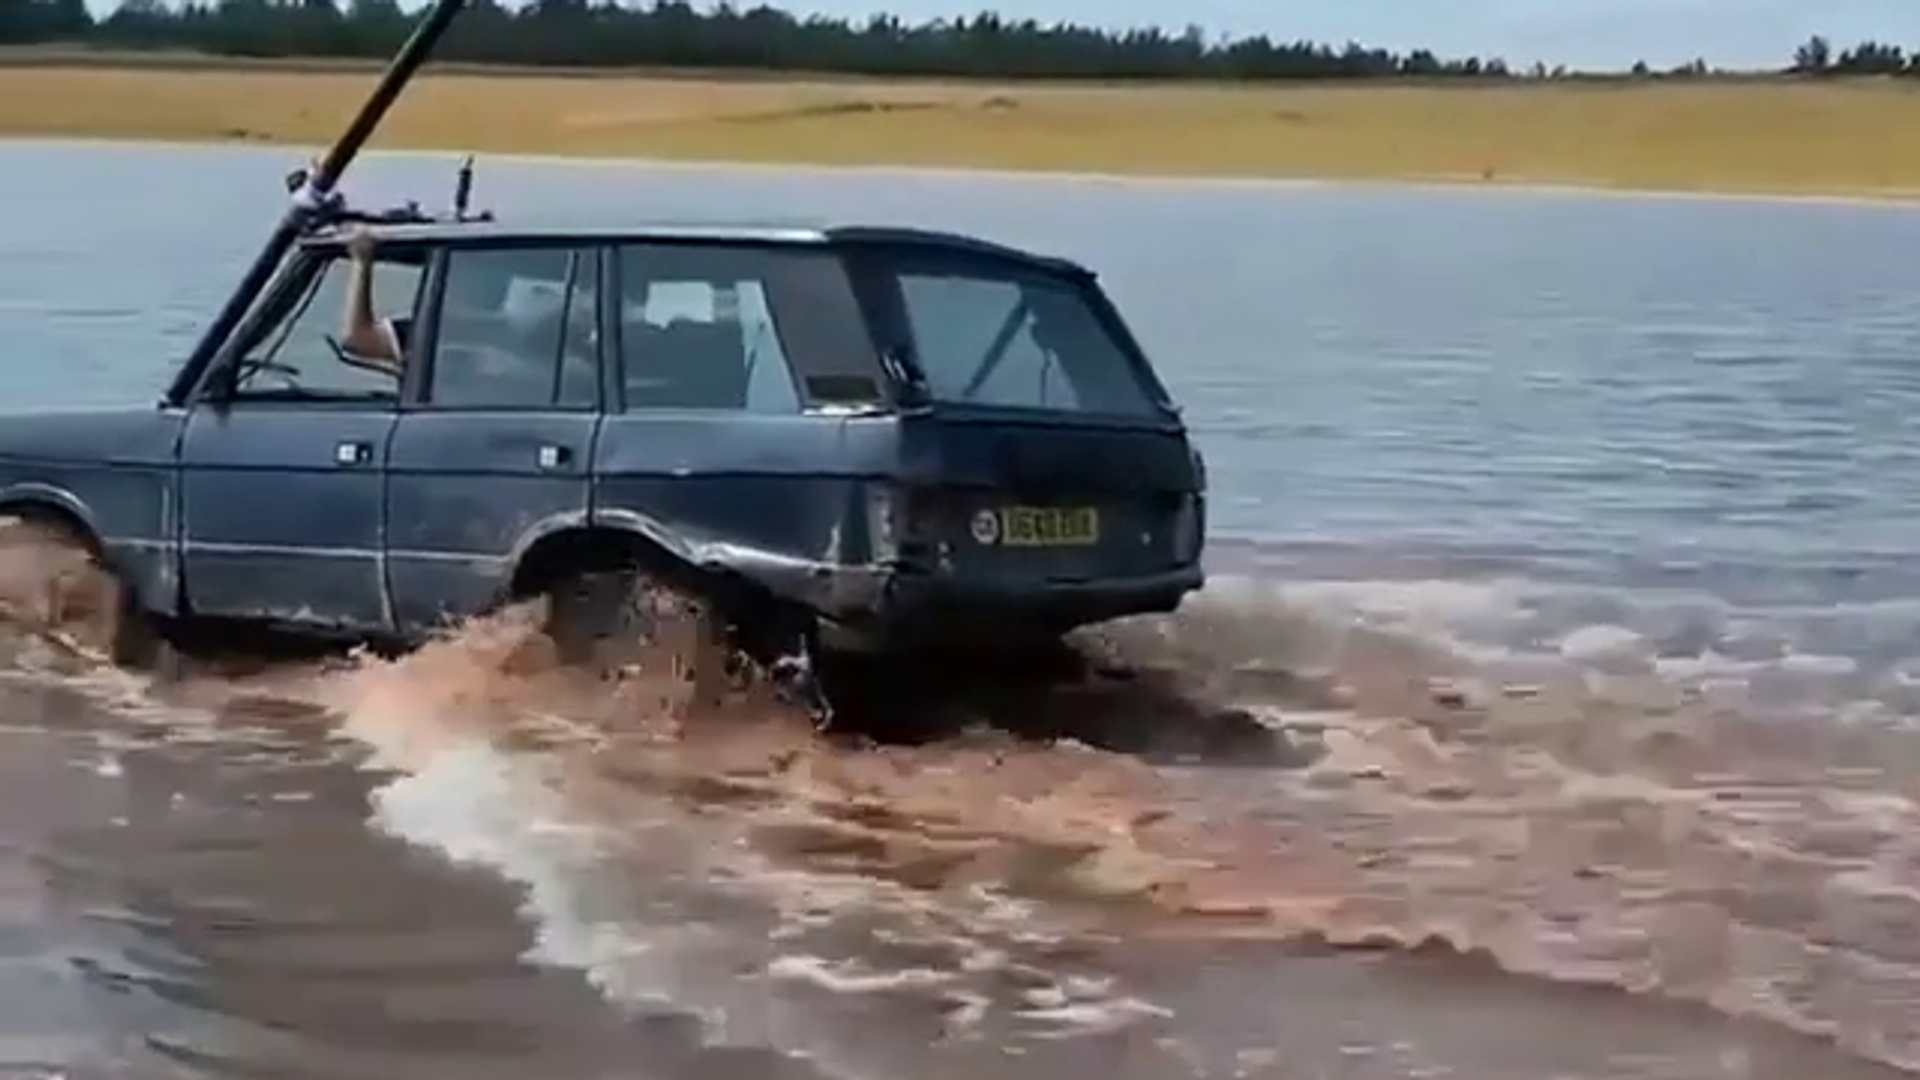 Video: un antiguo Range Rover se sumerge por completo para cruzar un río por debajo del agua - Sputnik Mundo, 1920, 02.08.2021